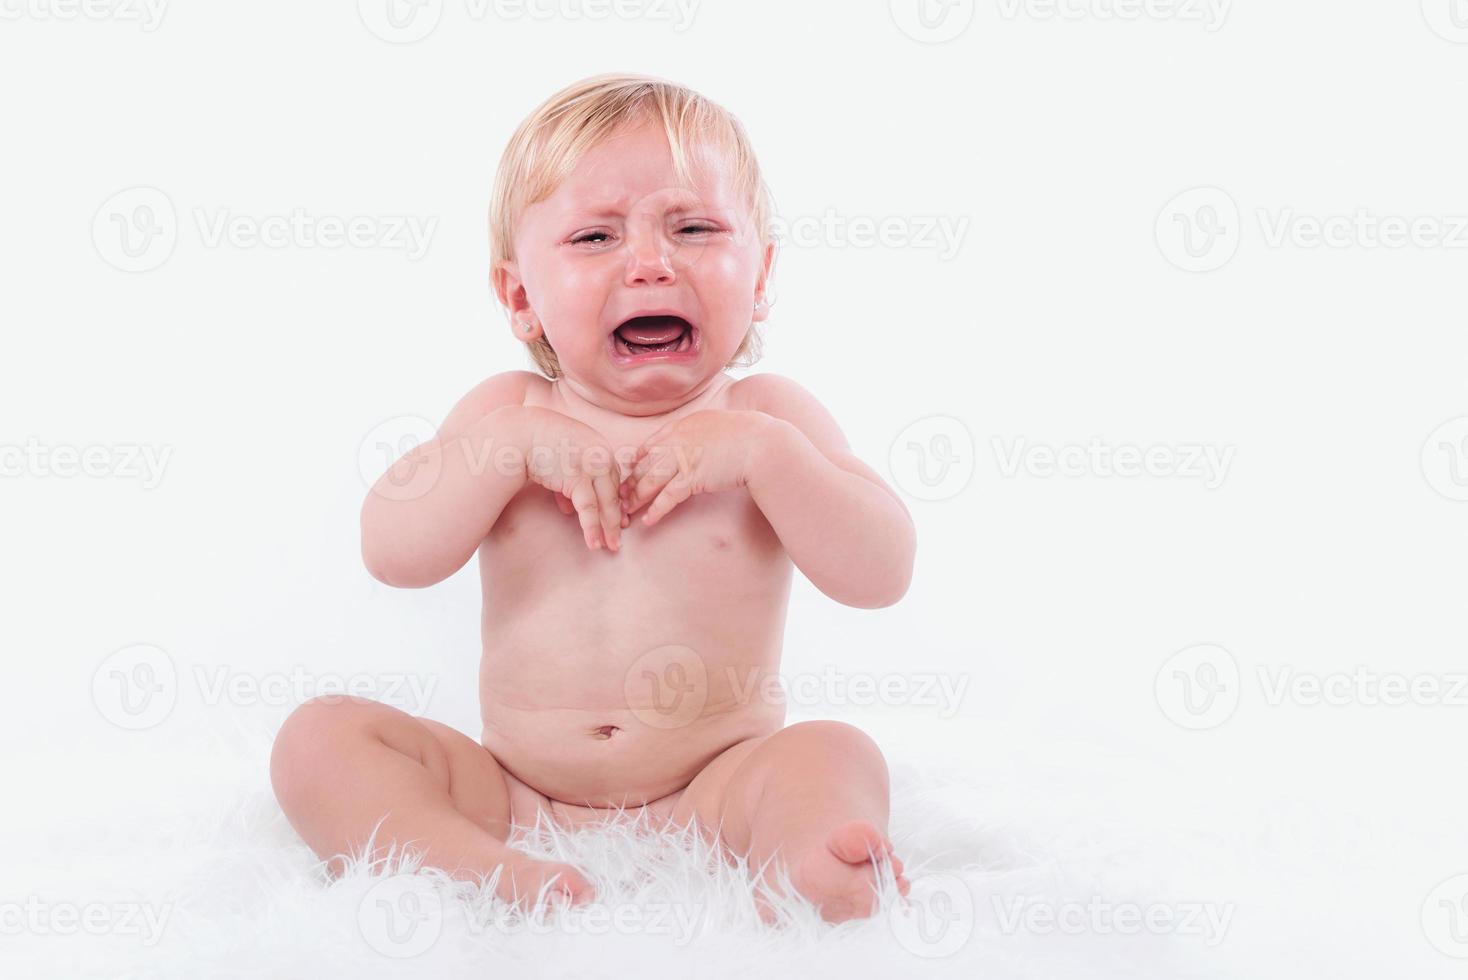 Crying baby on white background photo